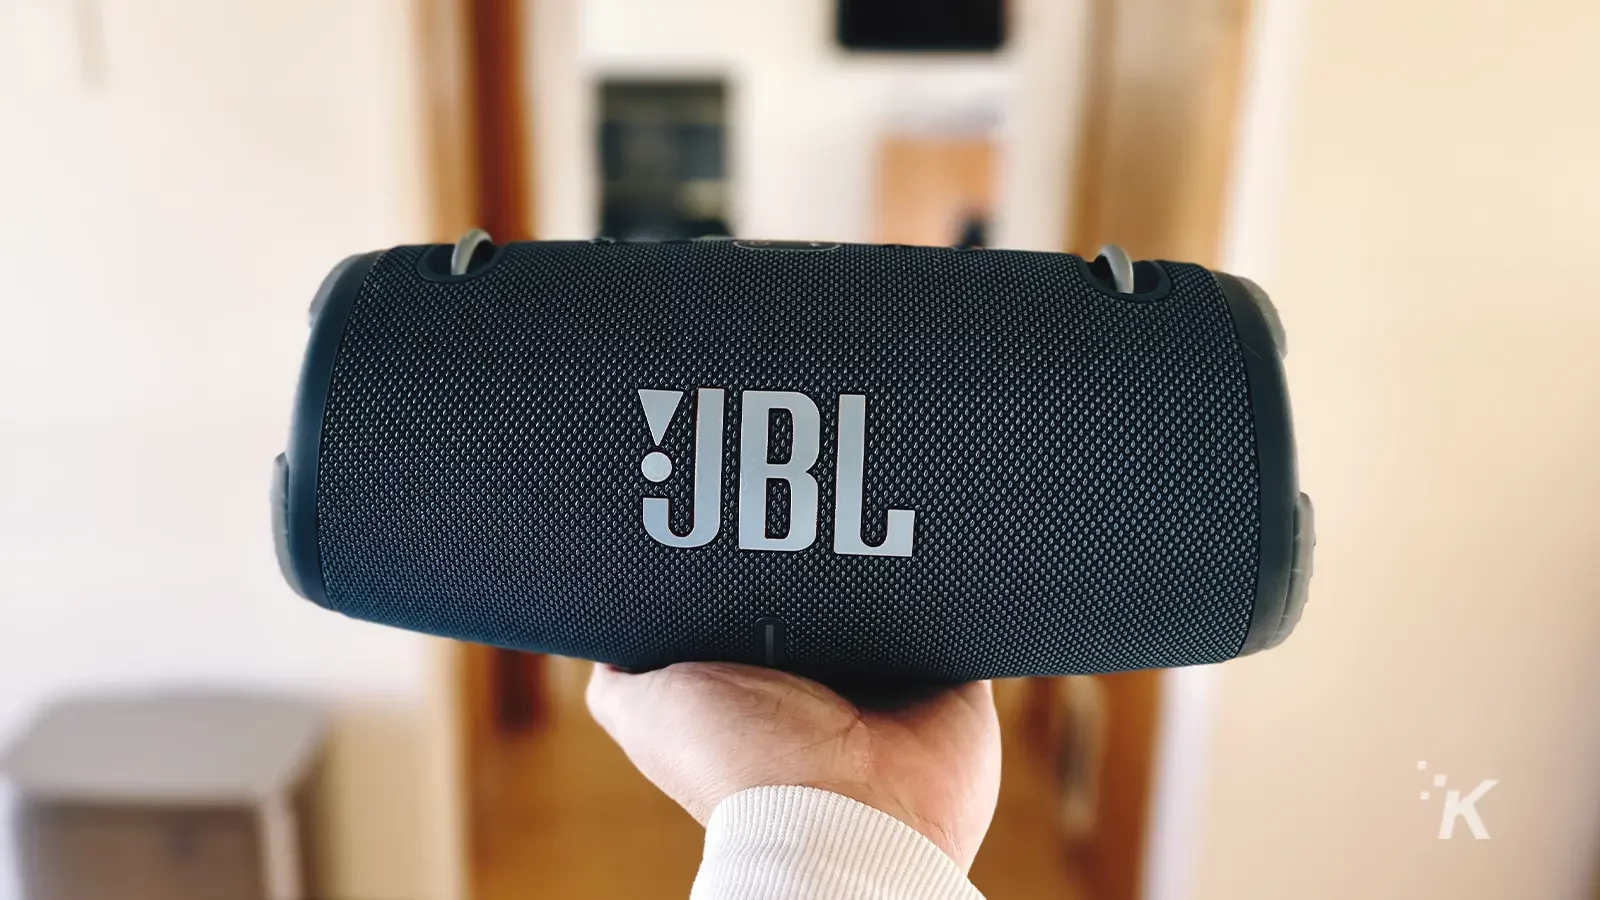 JBL Xtreme 3 alto-falante portátil preto na mão